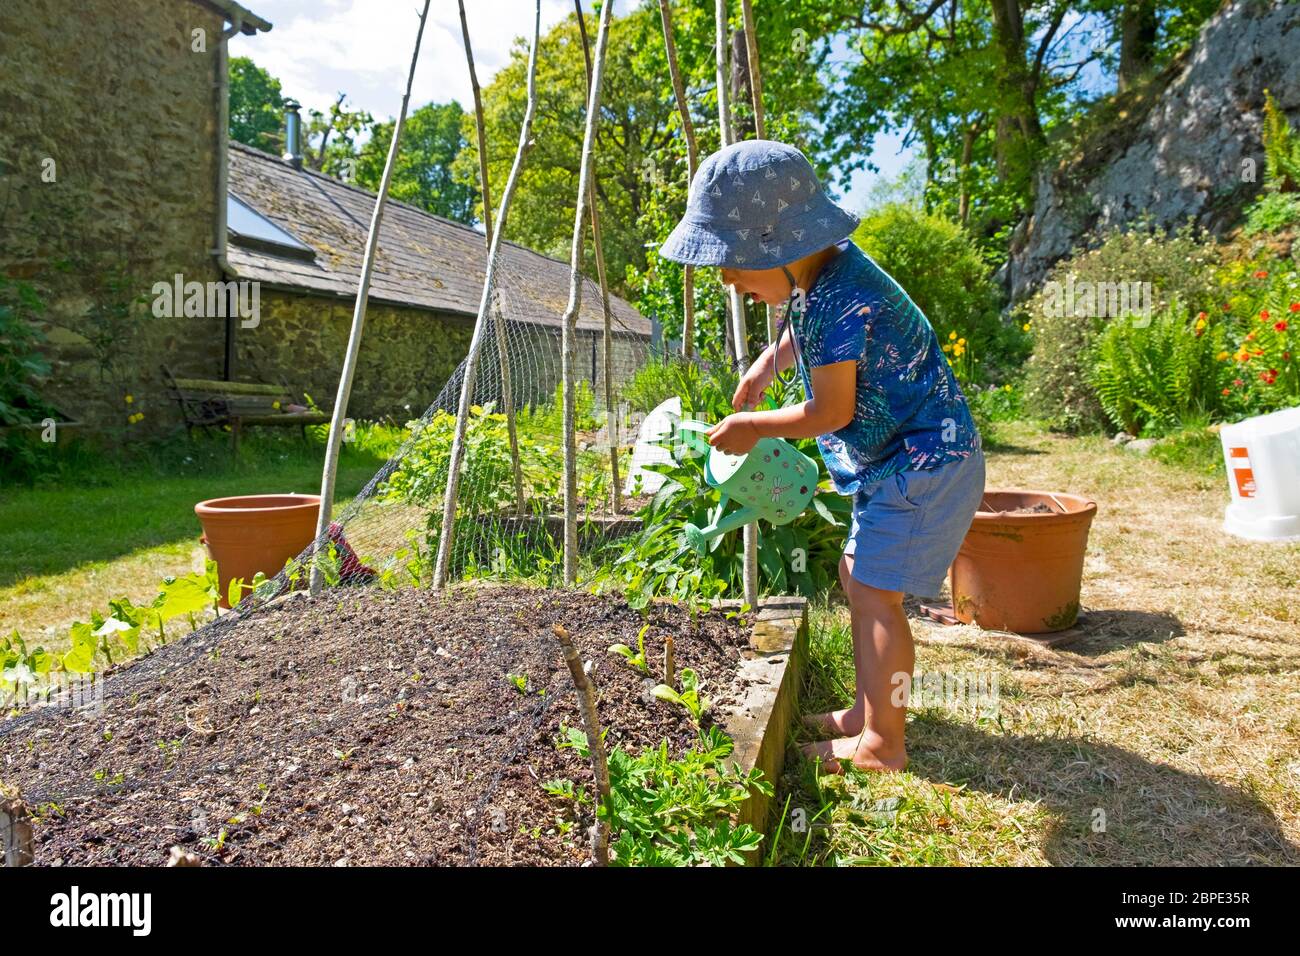 Enfant petit garçon 3 portant un chapeau de soleil avec arrosoir verser de l'eau sur les plantes dans un jardin sec de mai au printemps pays de Galles Royaume-Uni Grande-Bretagne KATHY DEWITT Banque D'Images